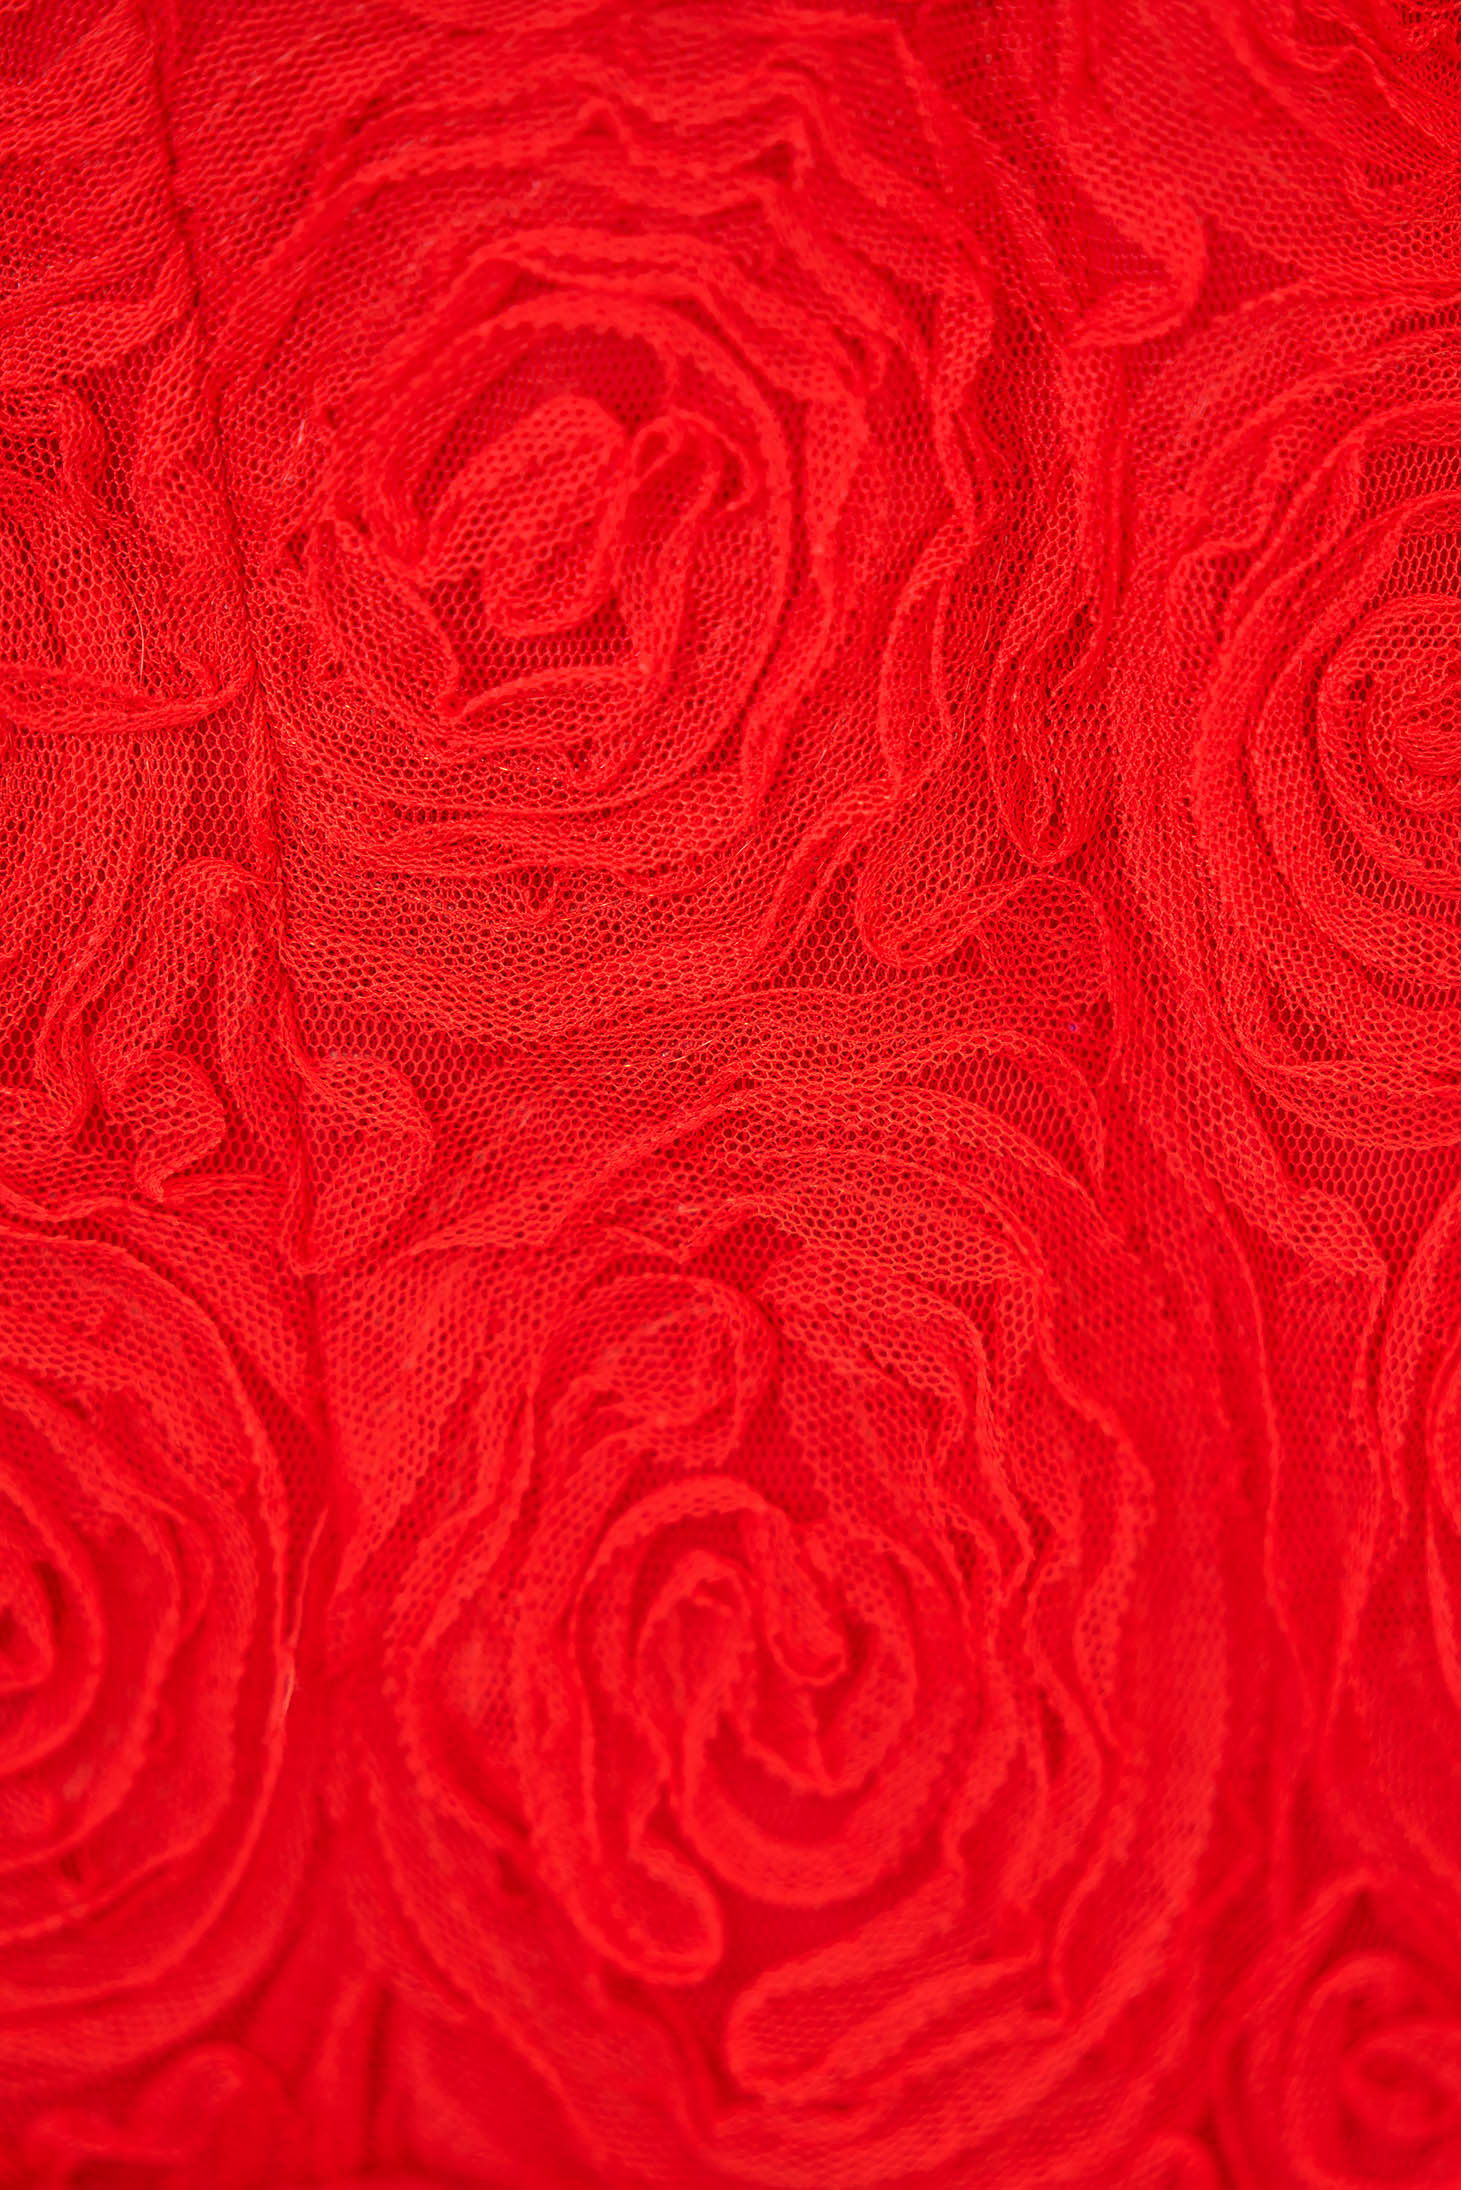 Red Midi Tulip Dress with Raised Tulip Flowers - StarShinerS 5 - StarShinerS.com